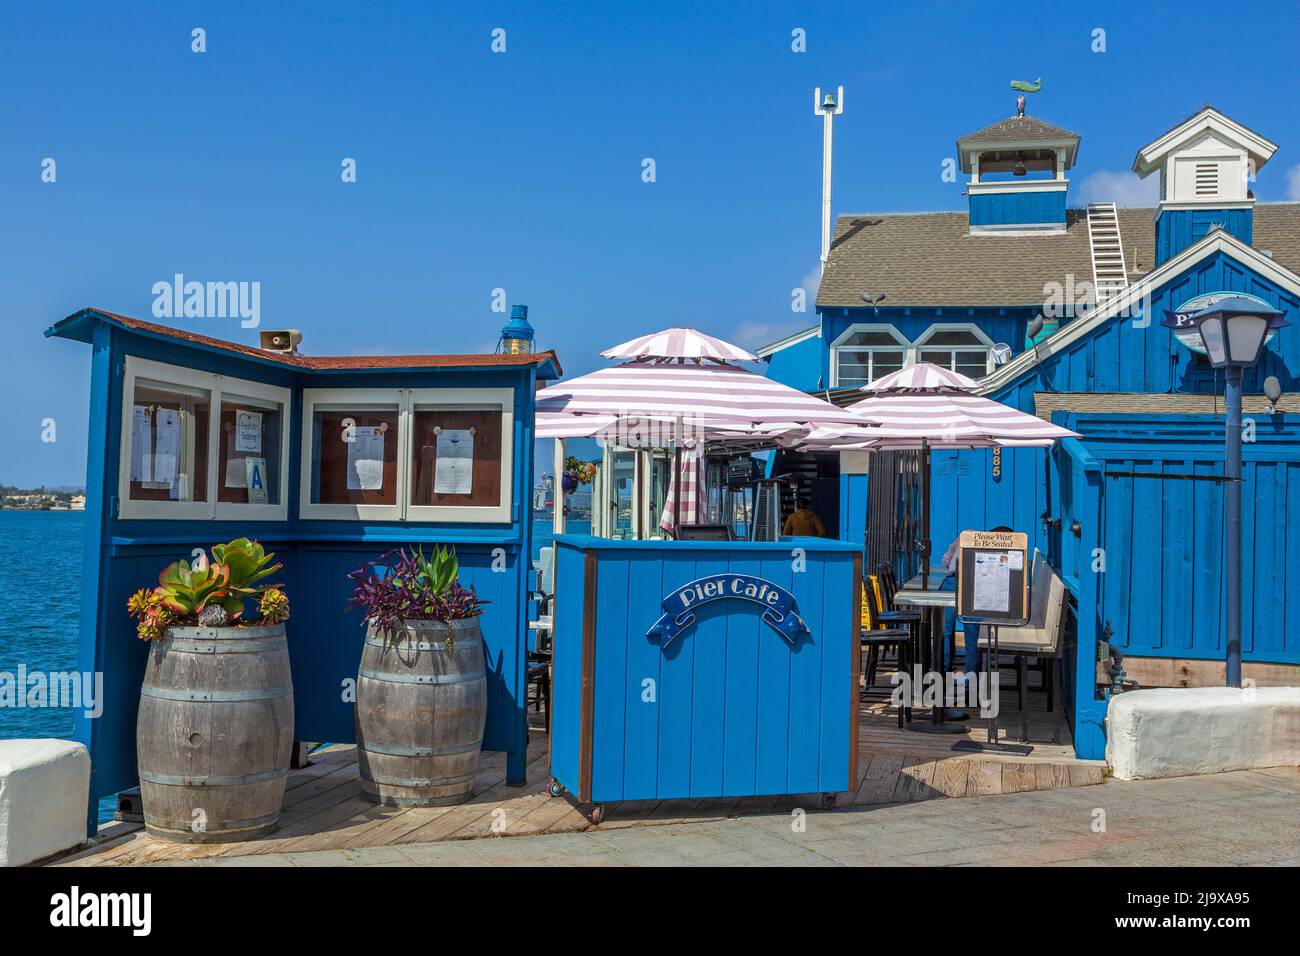 Seaport Village,San Diego, California, USA Stock Photo